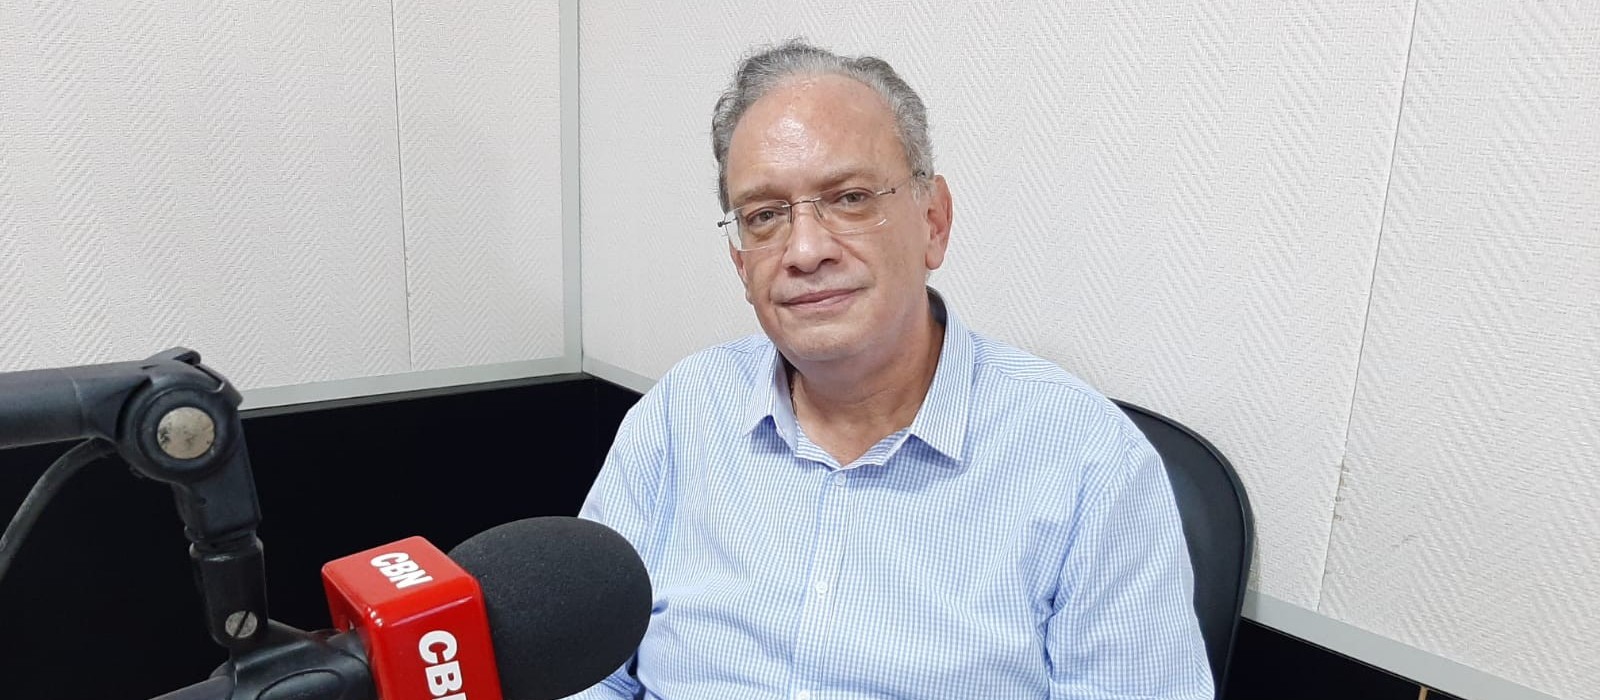 País precisa reduzir dependência de insumos importados, diz presidente da Fiep